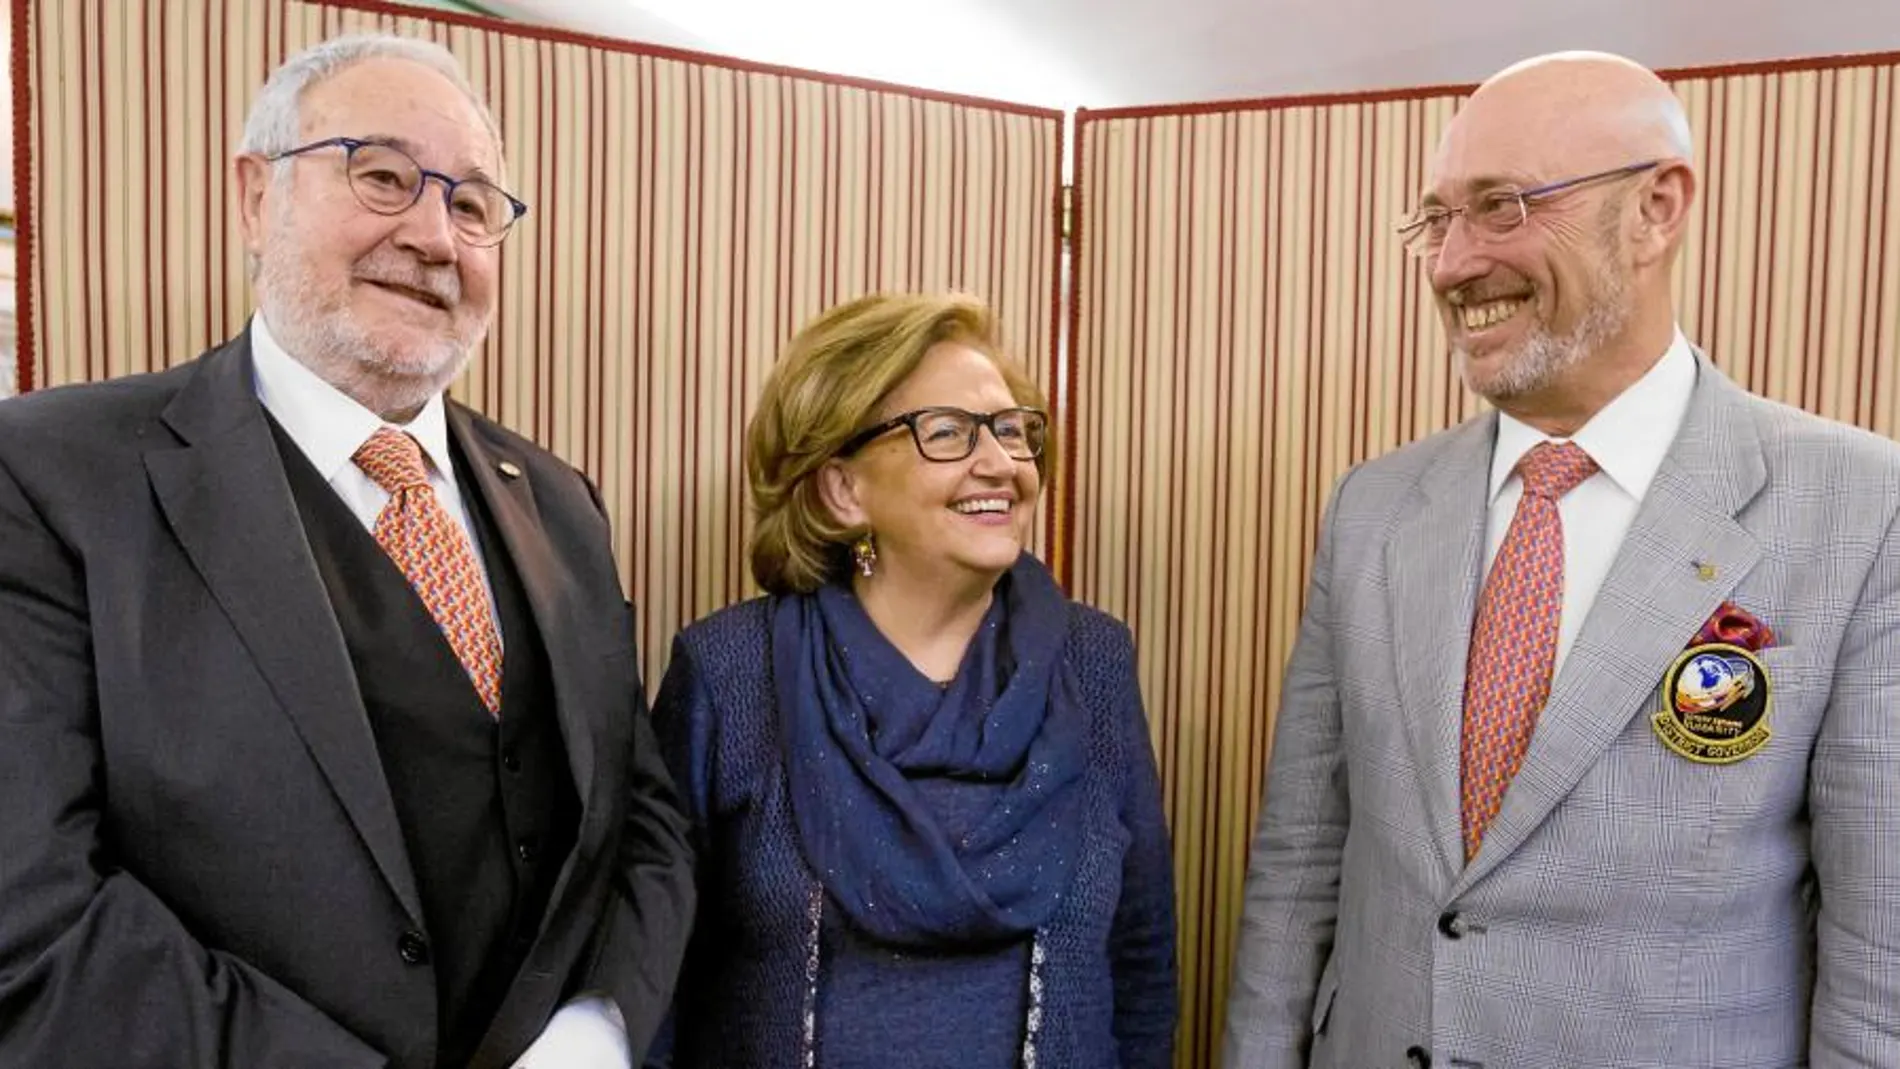 Benito Blanco, María Ángeles Porres, del Rotary Club Valladolid; y el gobernador del Distrito 2201, Antonio Quesada, en su última visita a la capital vallisoletana